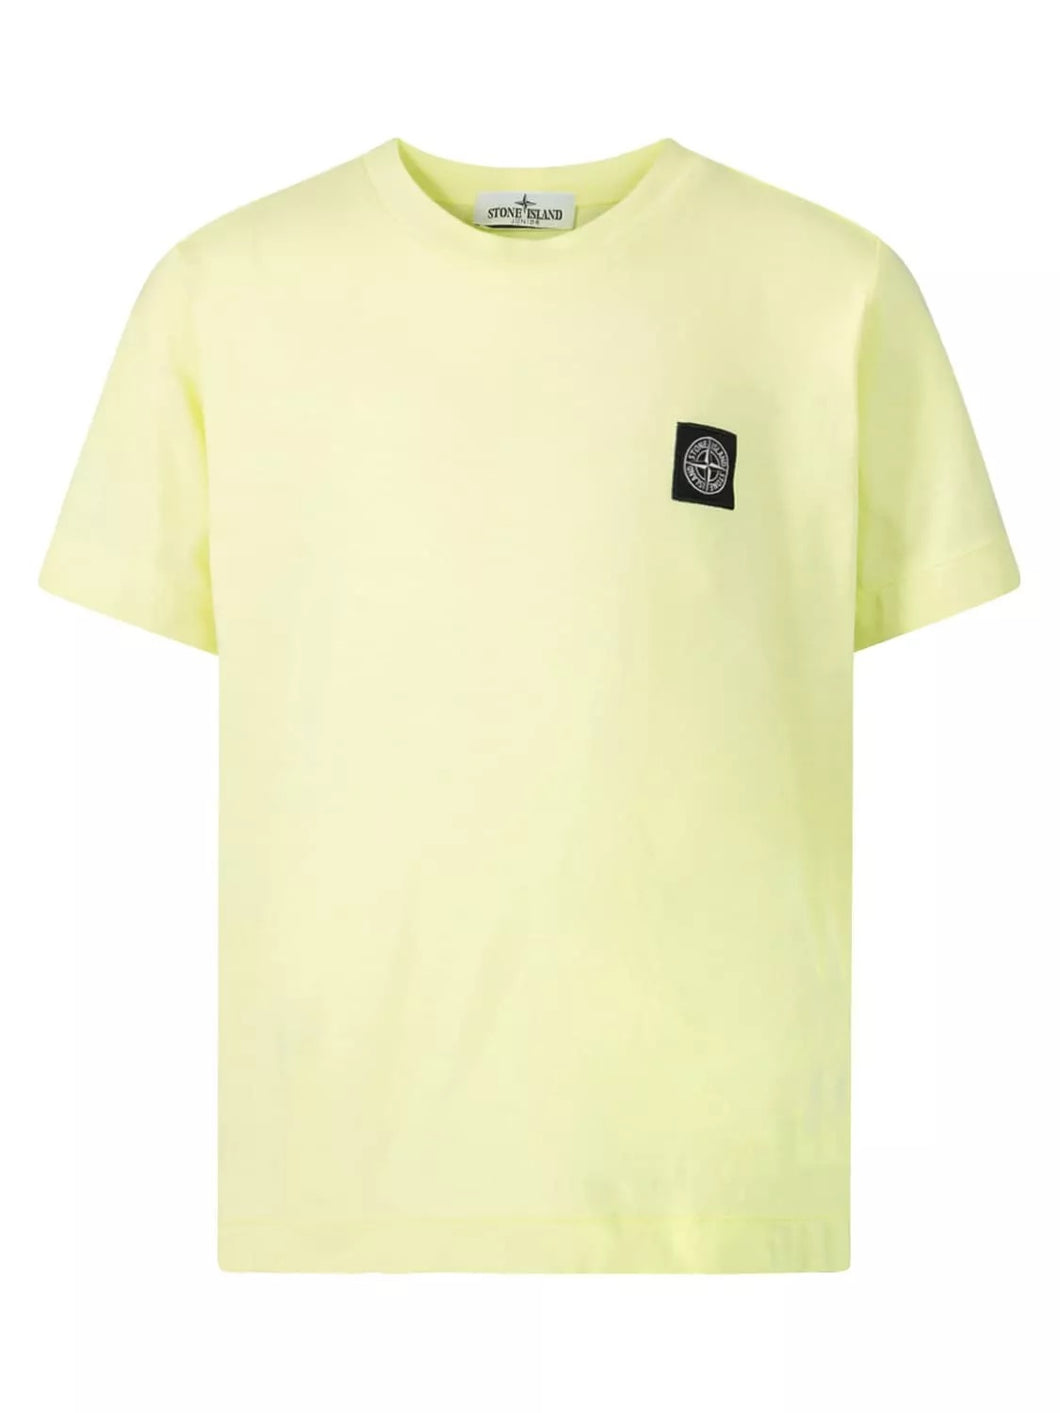 Stone Island t-shirt giallo